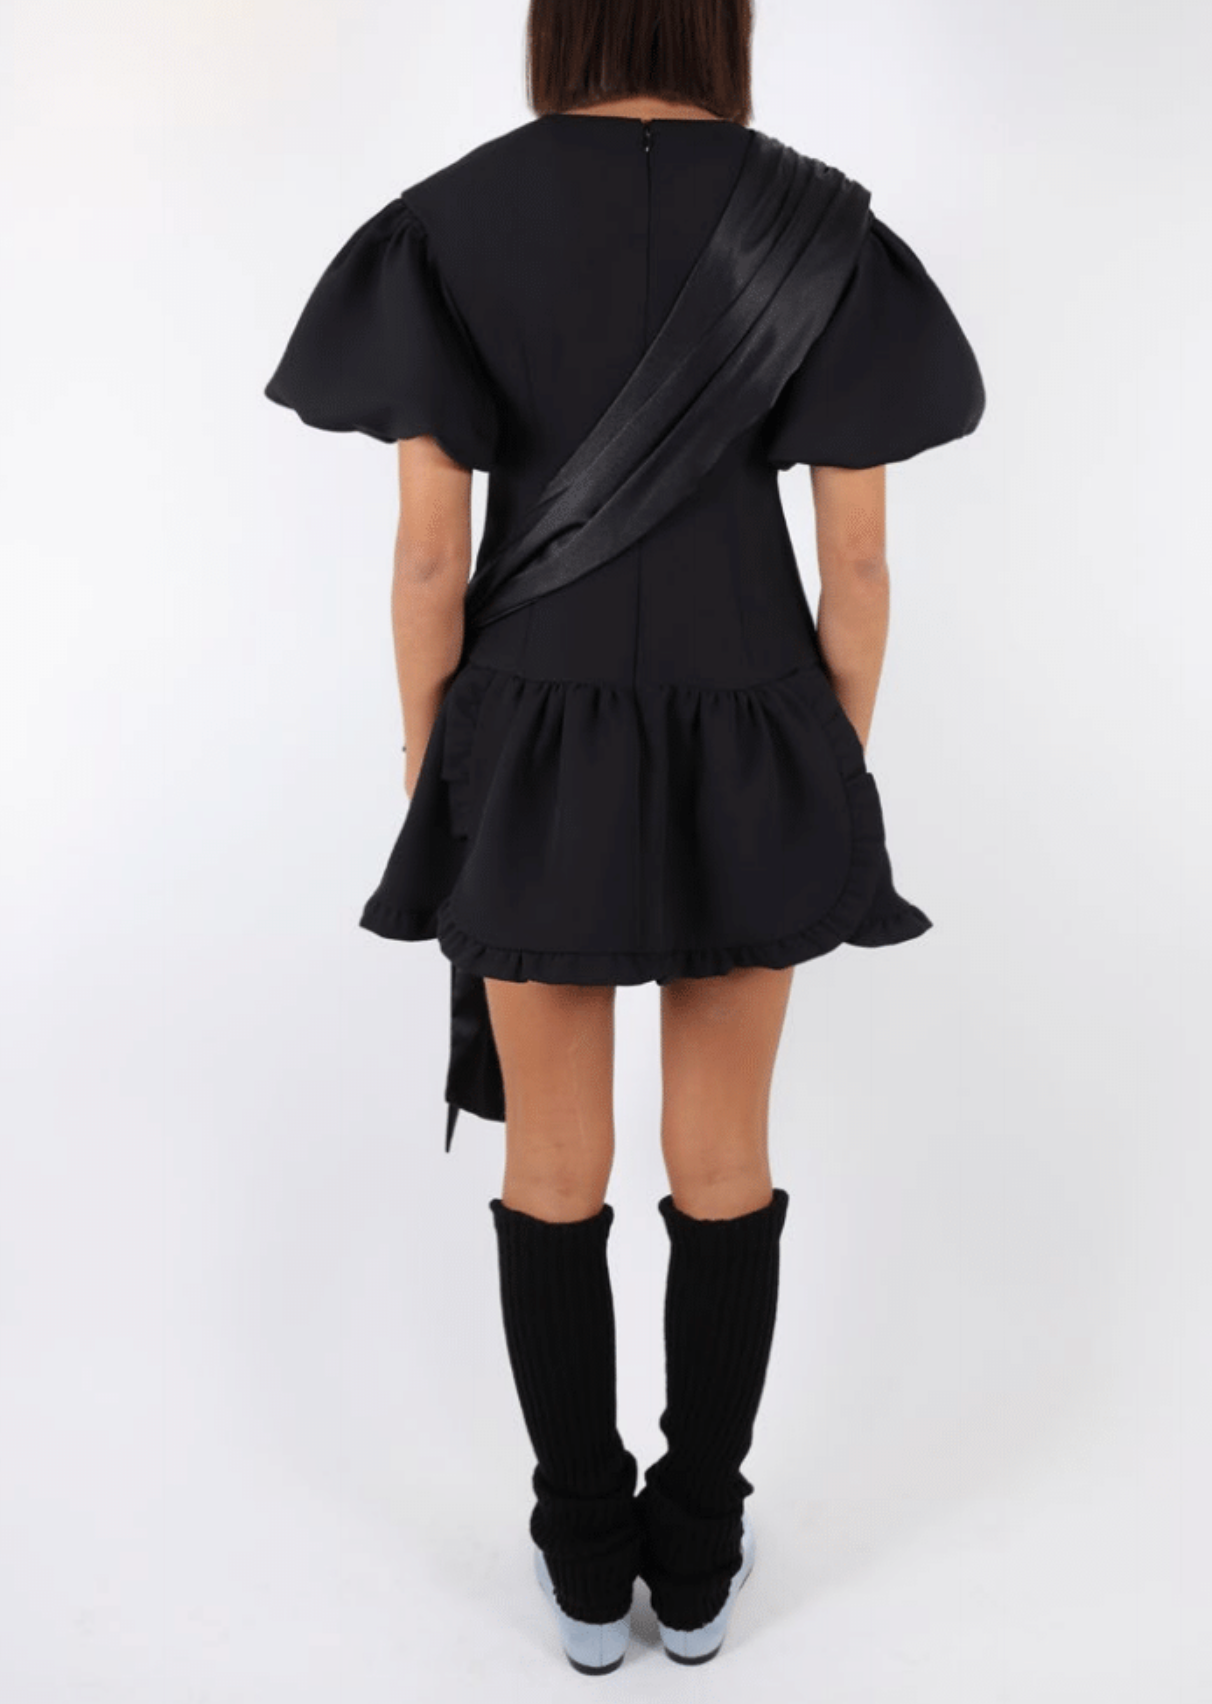 Filenes Dress in Black by Sandy Liang http://www.shoprecital.com